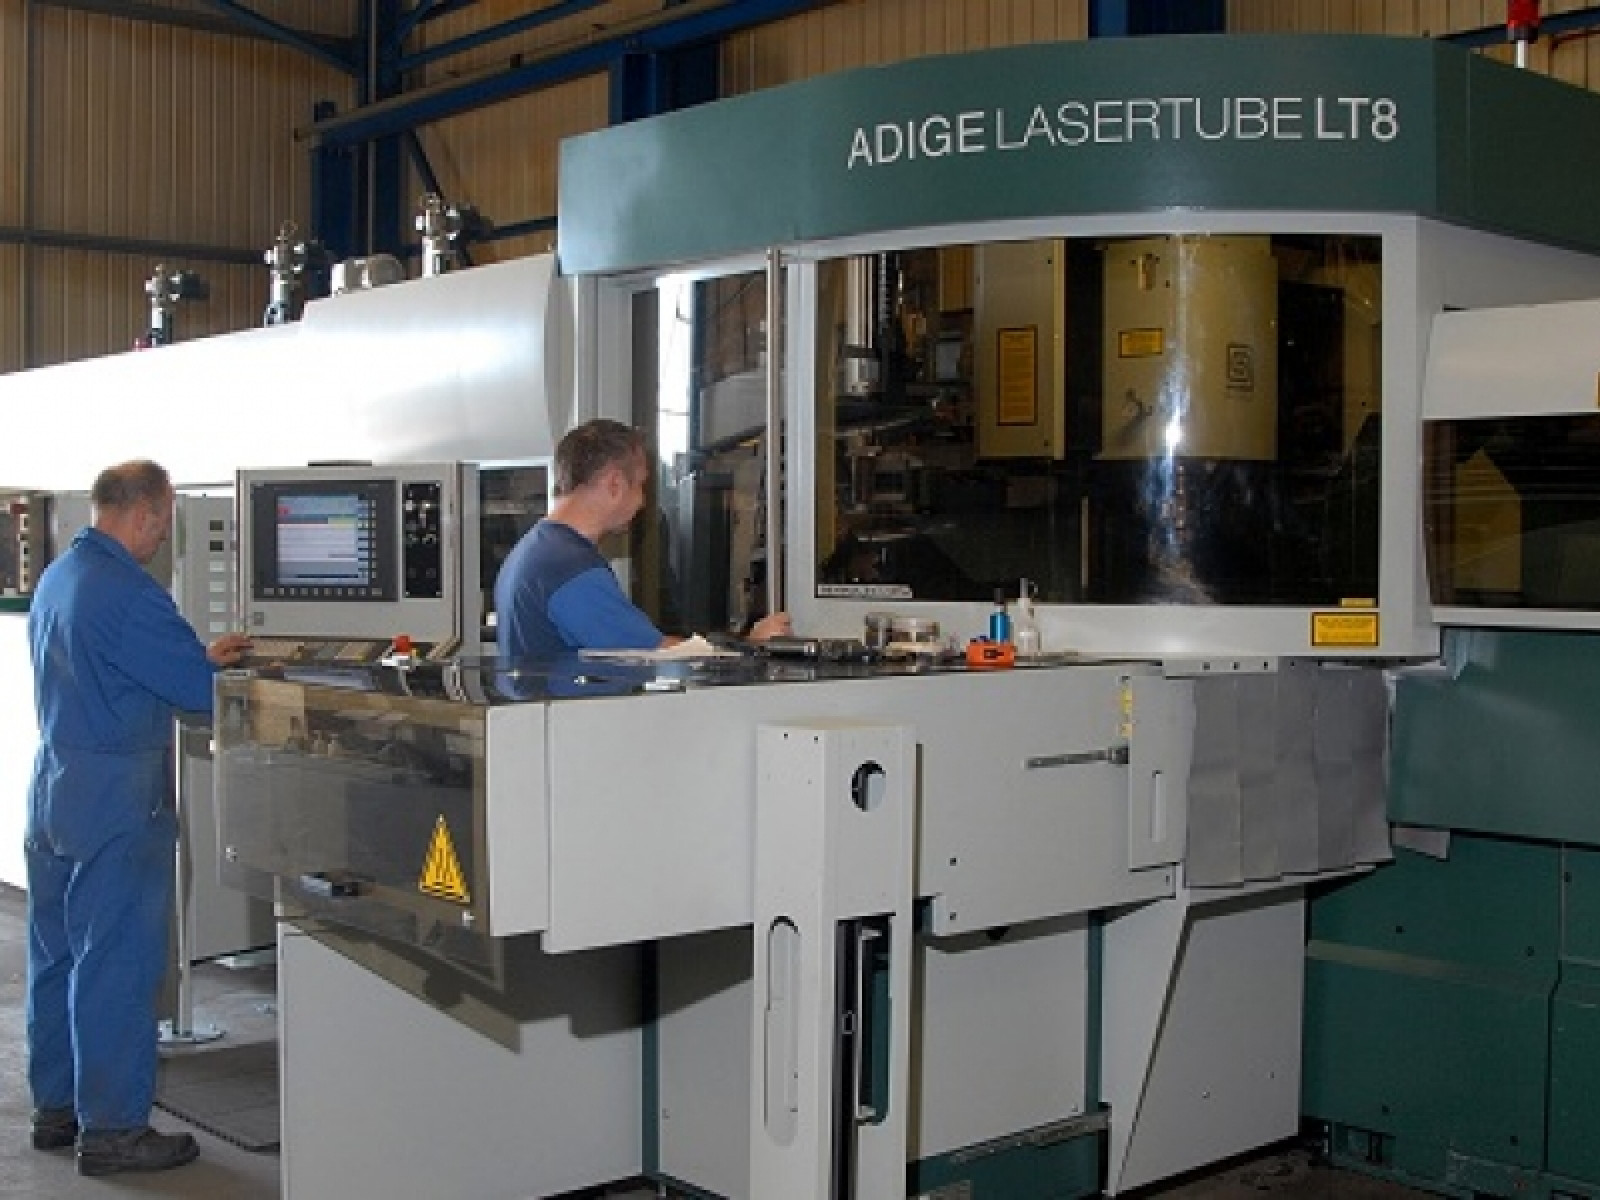 SSC invest in Adige LT8 tube laser